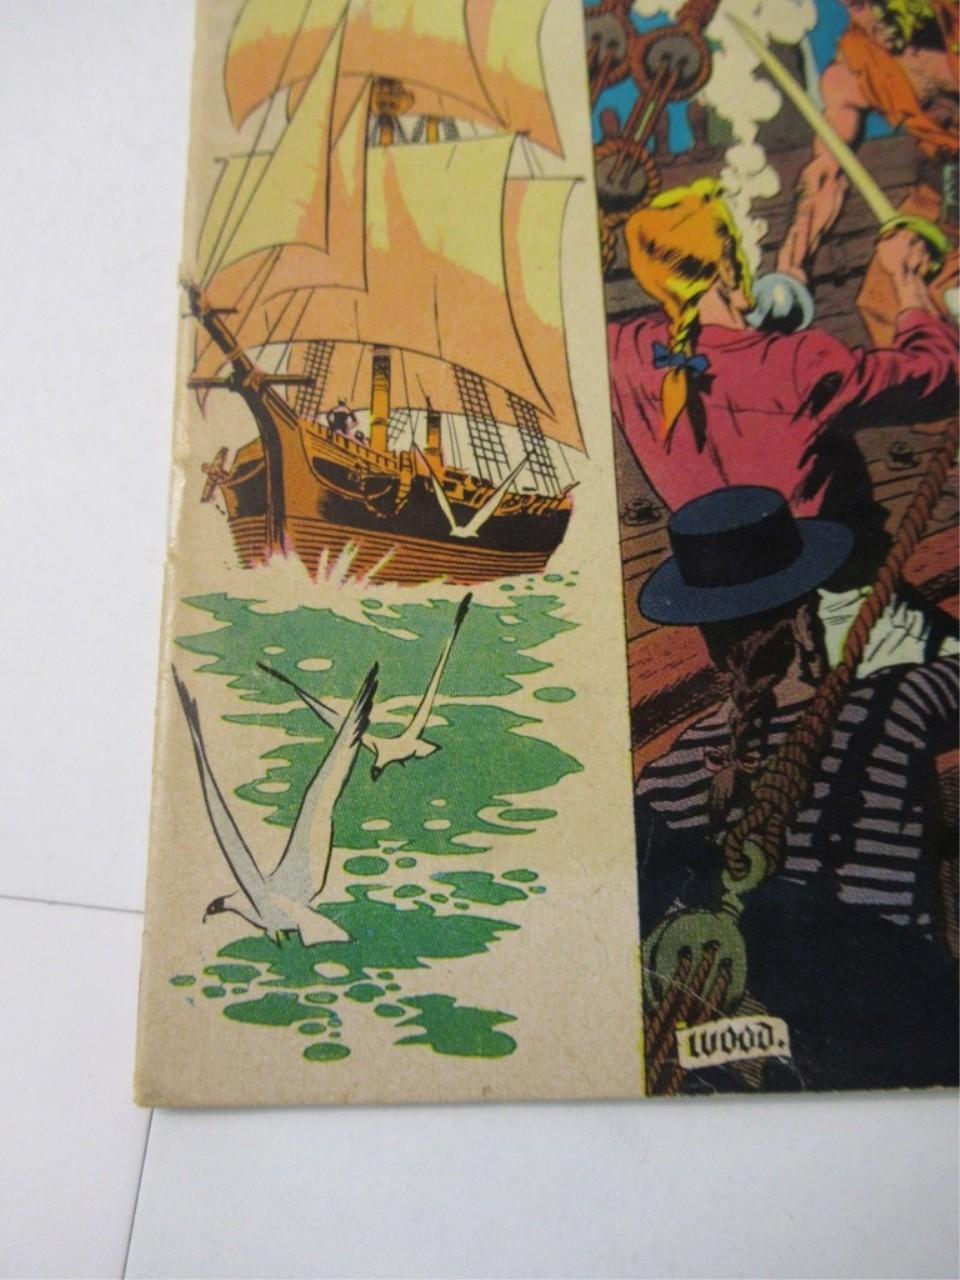 Piracy #1 (1954) EC Comics